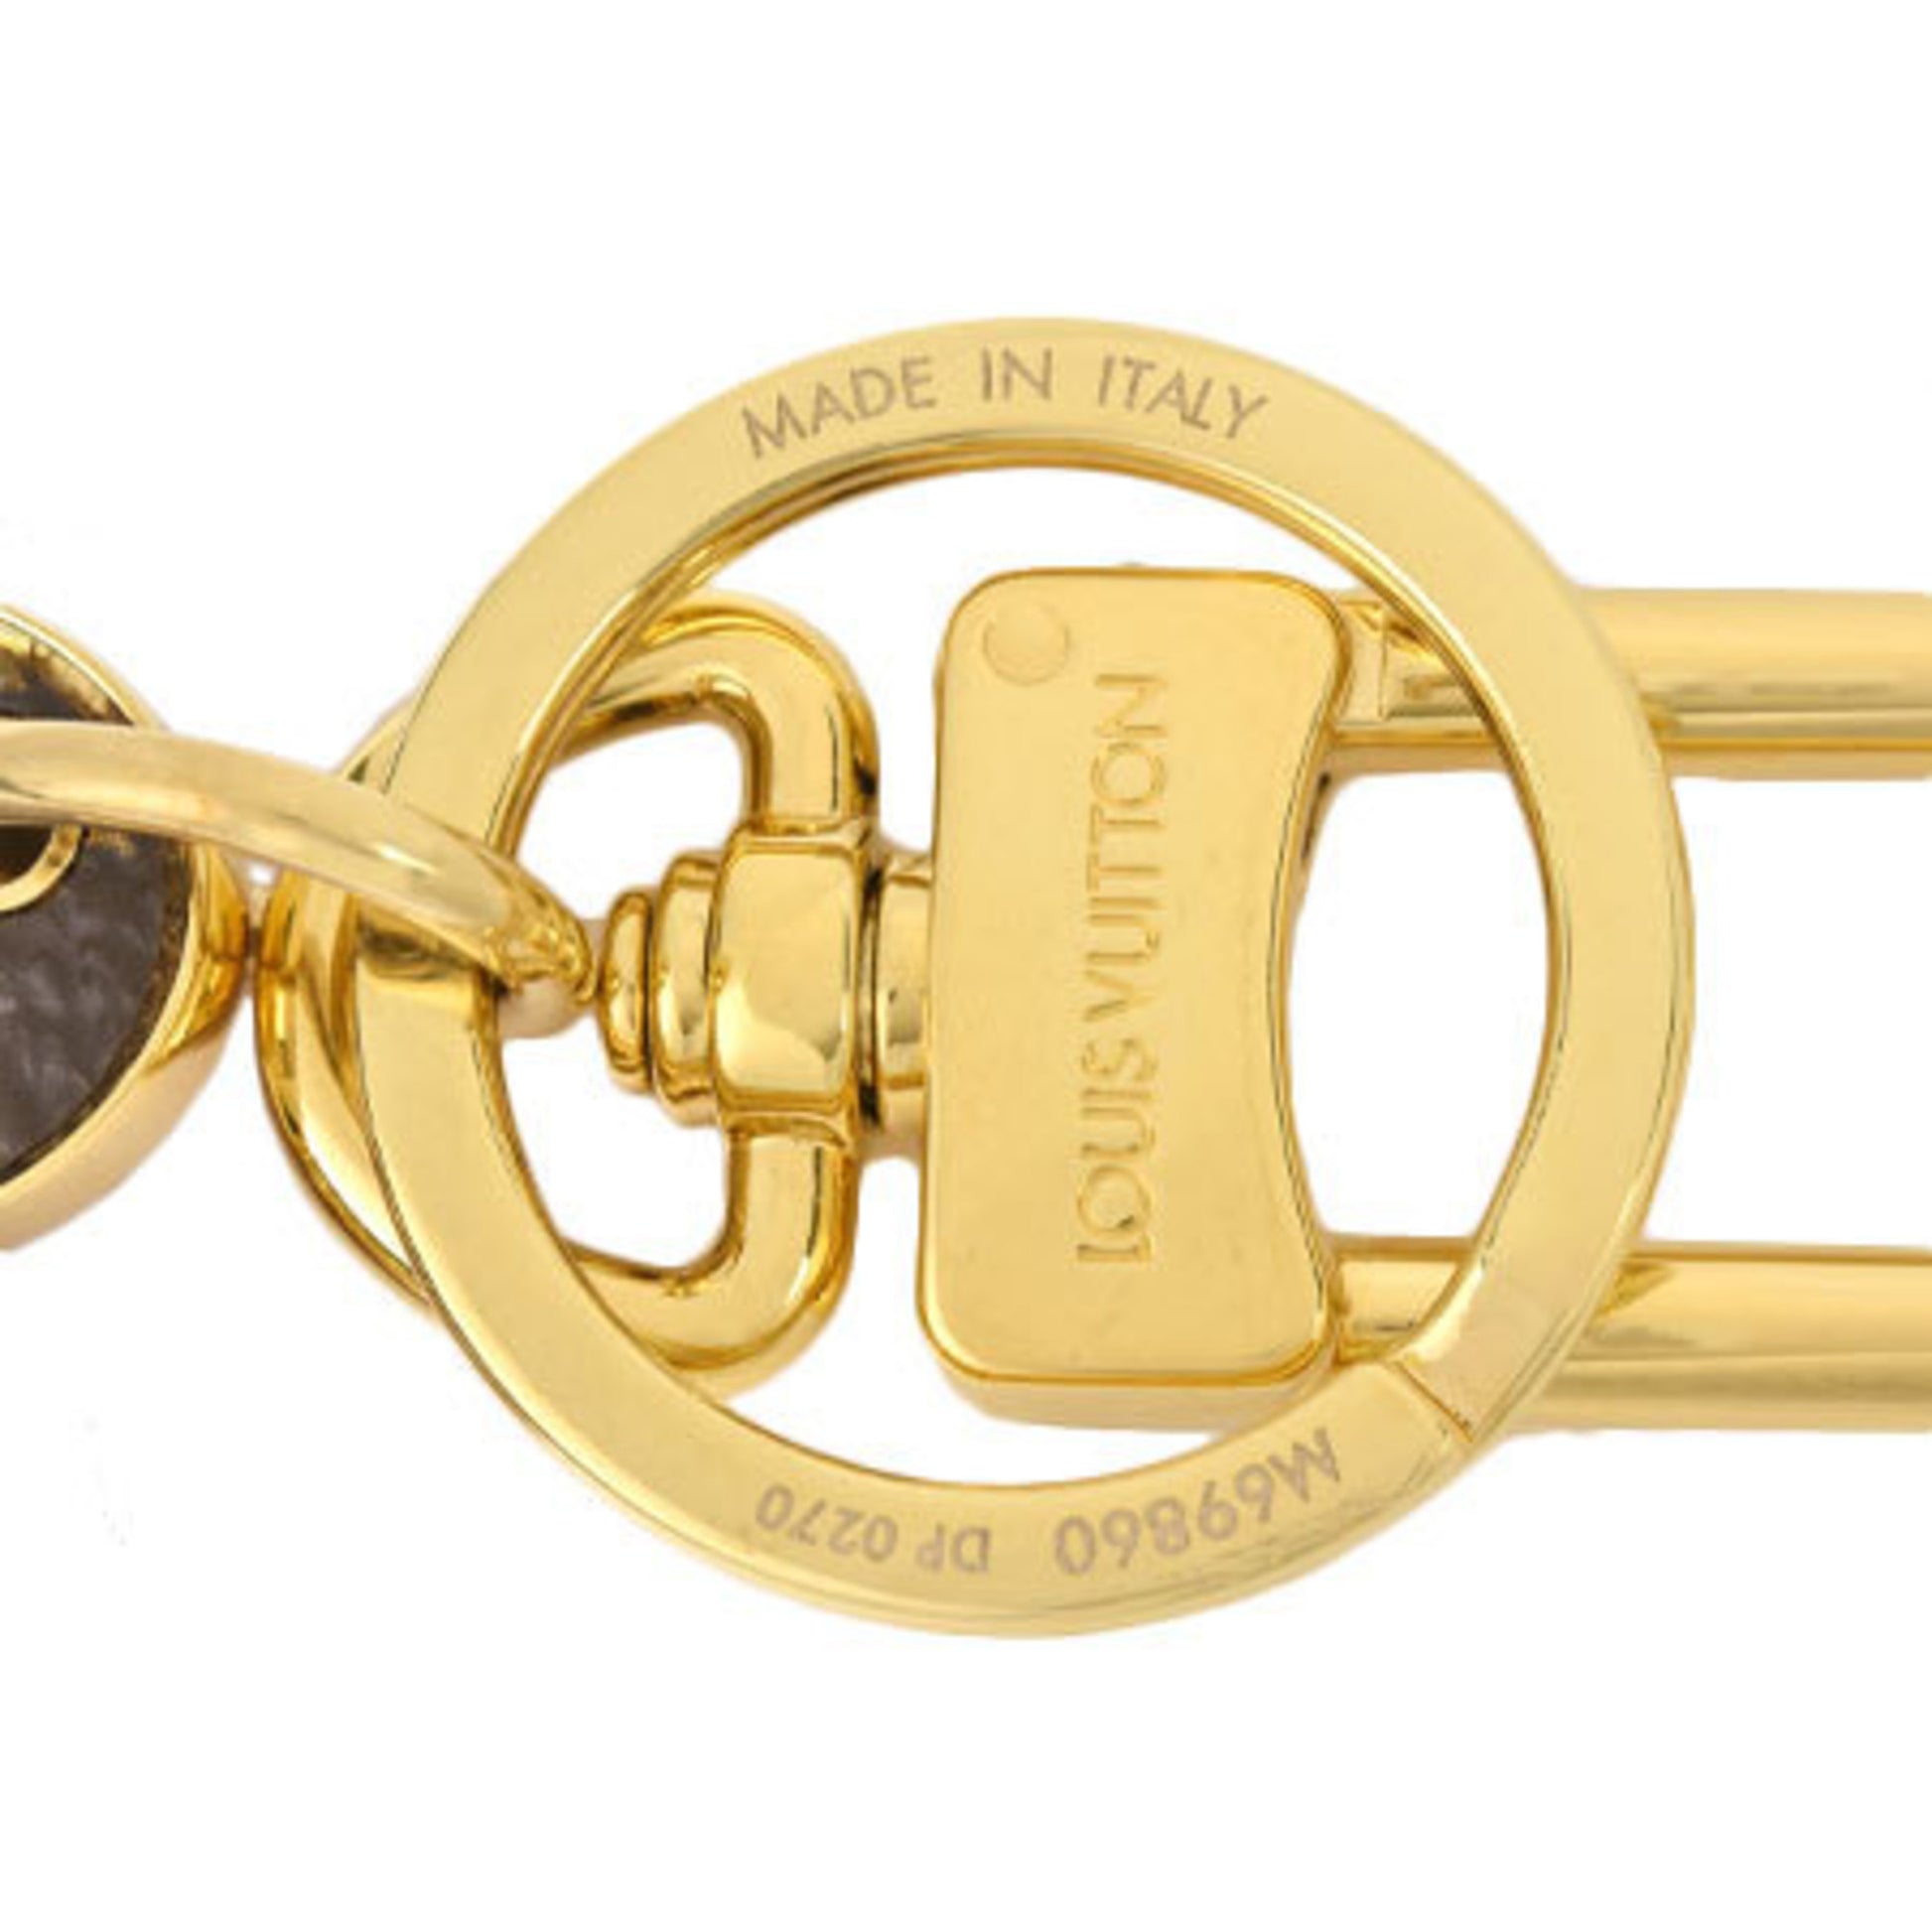 Louis Vuitton LOUIS VUITTON Bag Charm Porto Cle Vivienne Key Ring